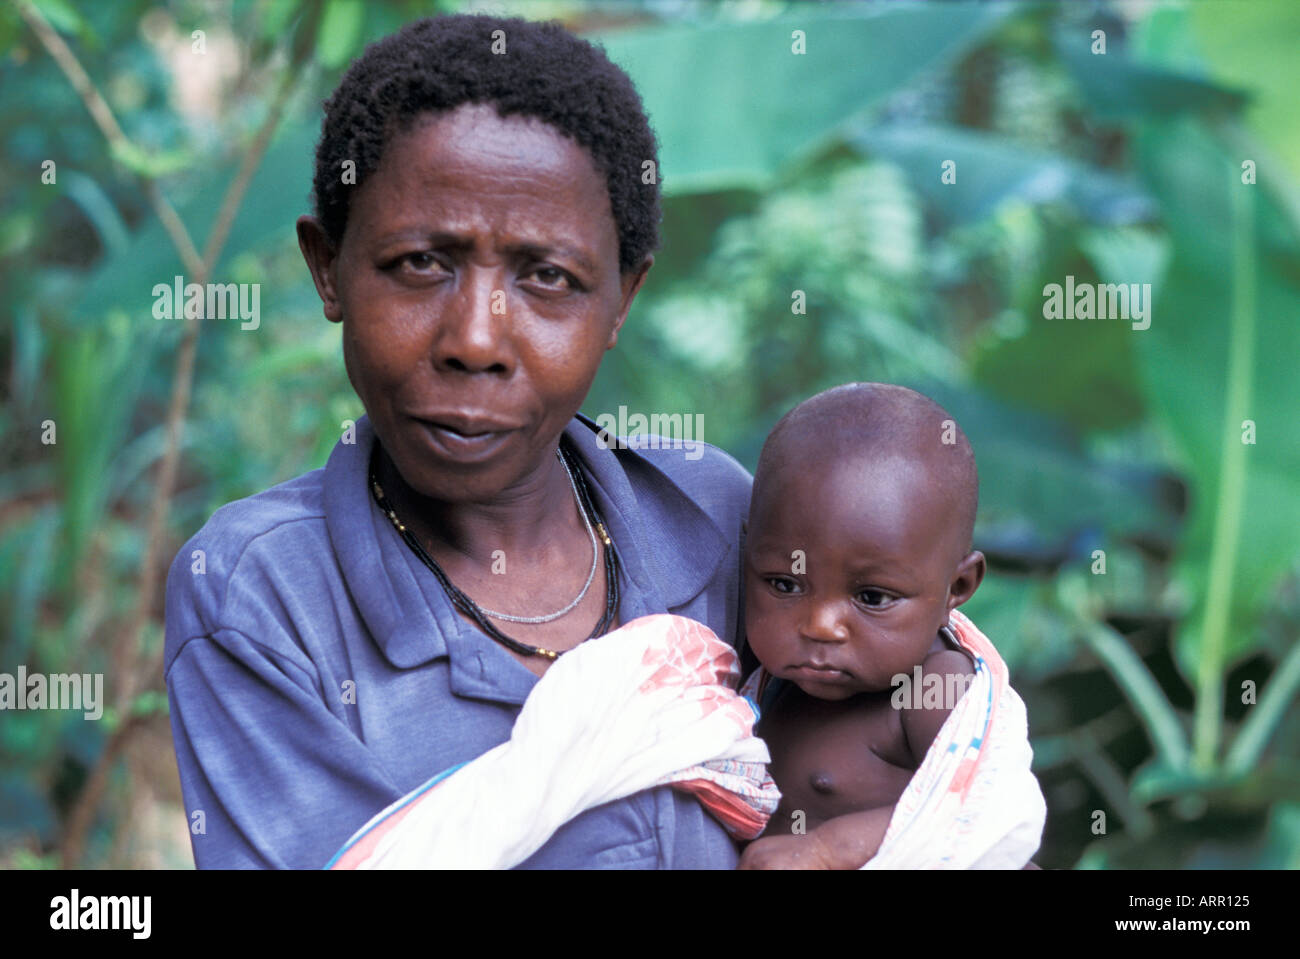 AFRICA KENYA KALIFI Kenyan mother with baby wrapped in kanga cloth Stock Photo